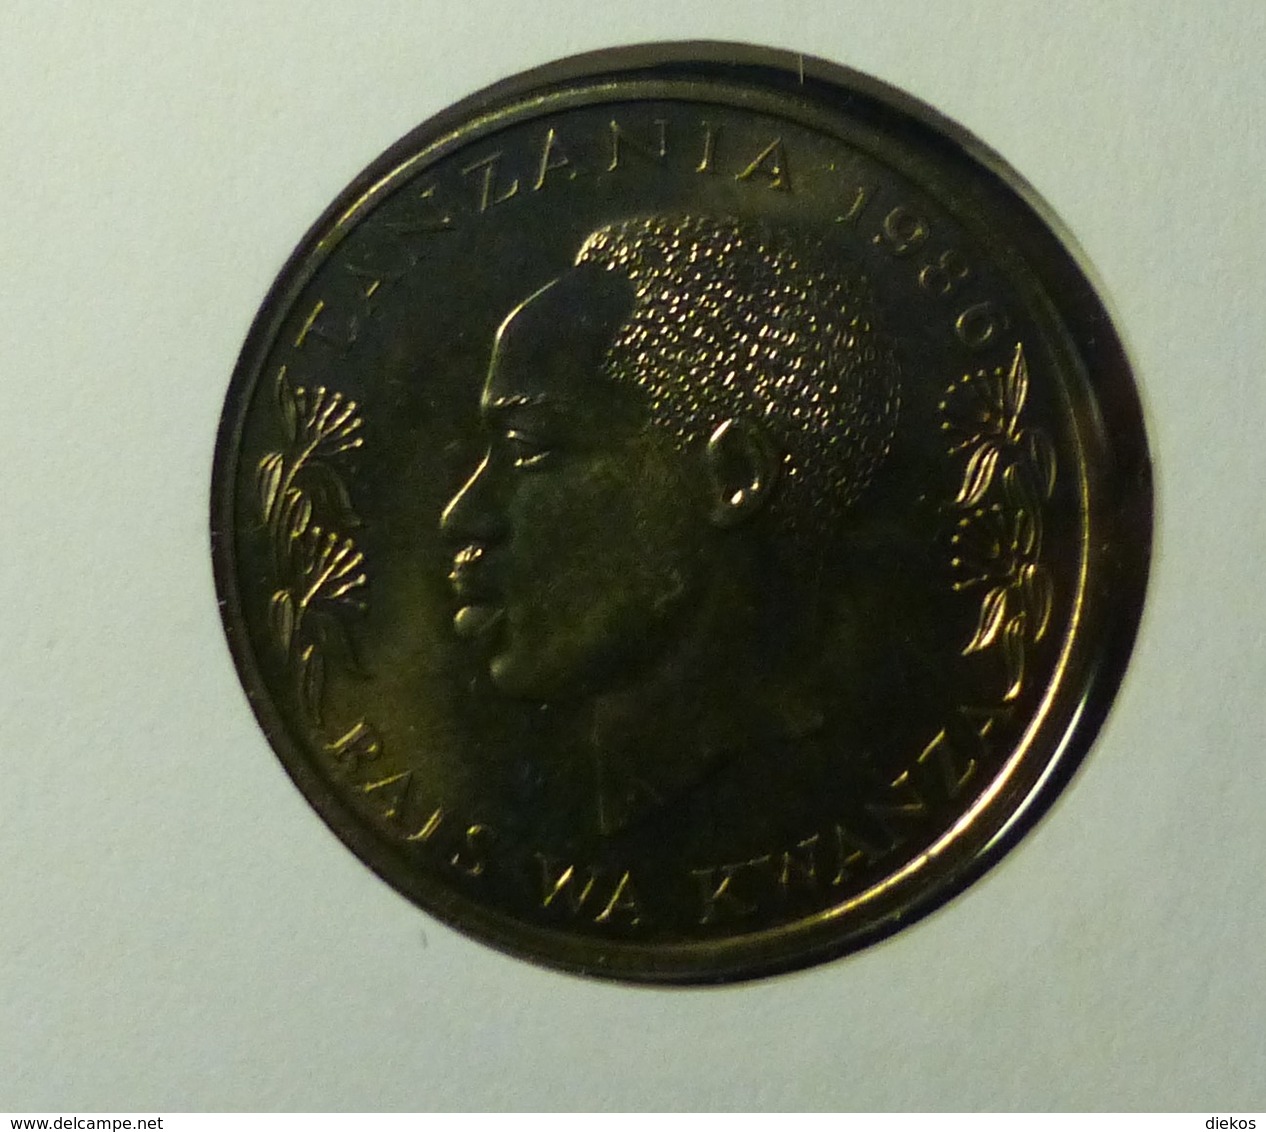 Numisbrief Coin Cover  Tanzania 100 Shilingi 1986 Uganda Elefant   #numis80 - Tanzanie